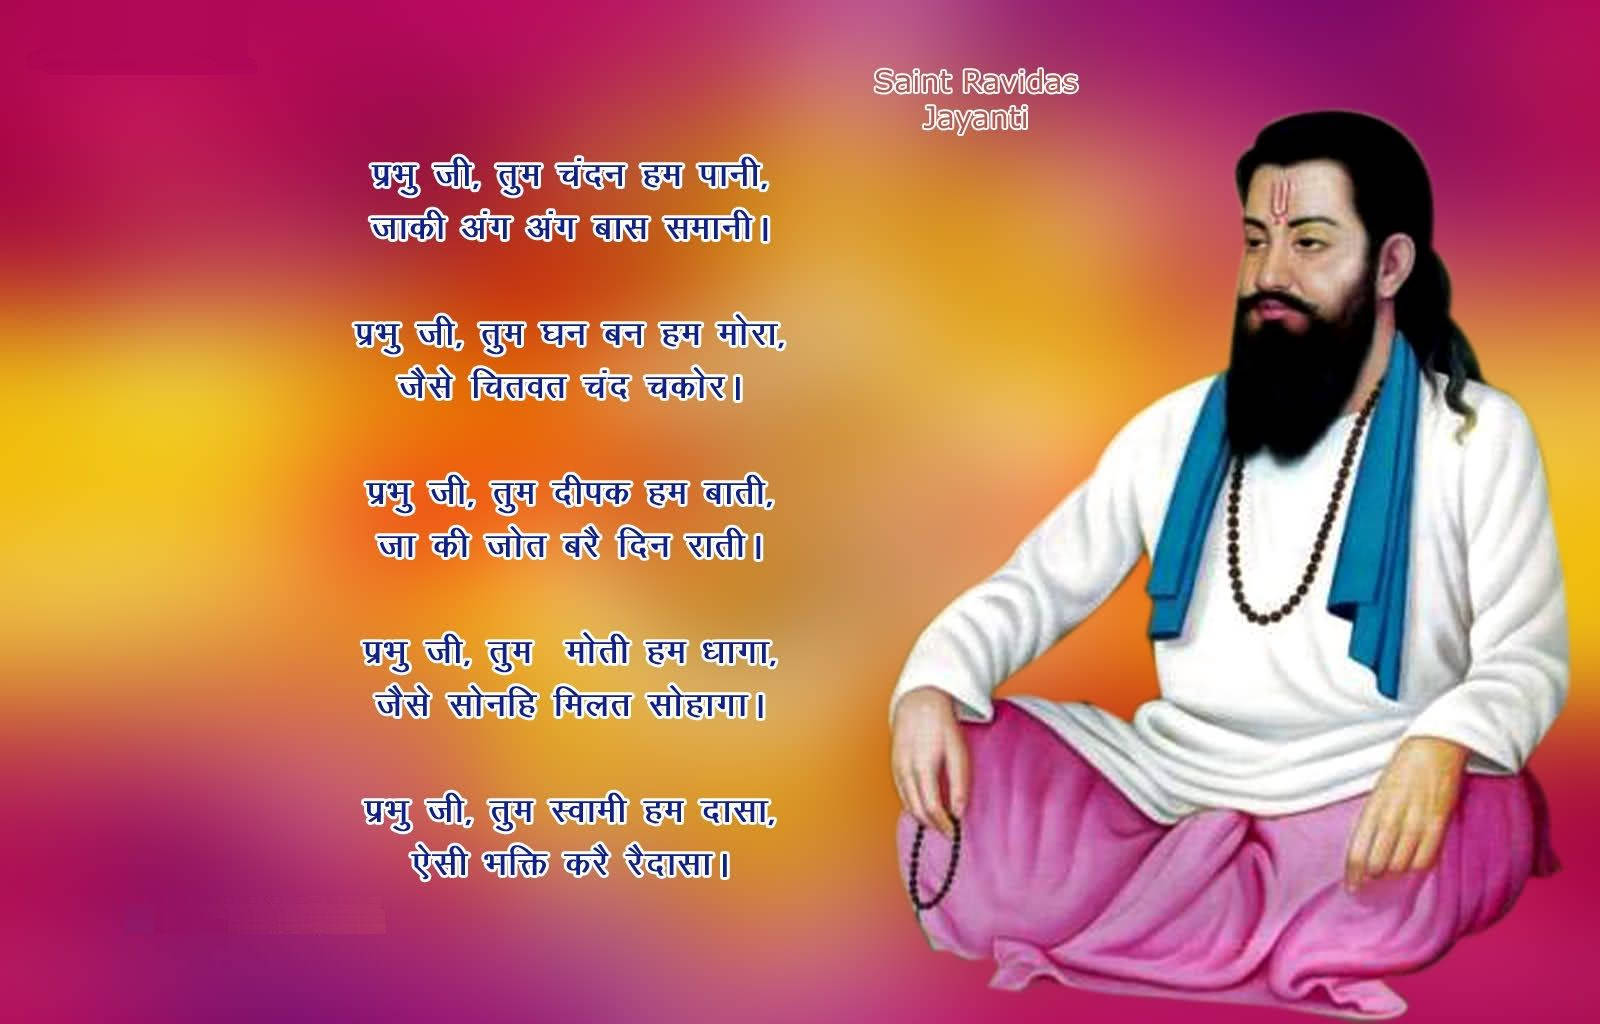 A Reverent Tribute To Guru Ravidass